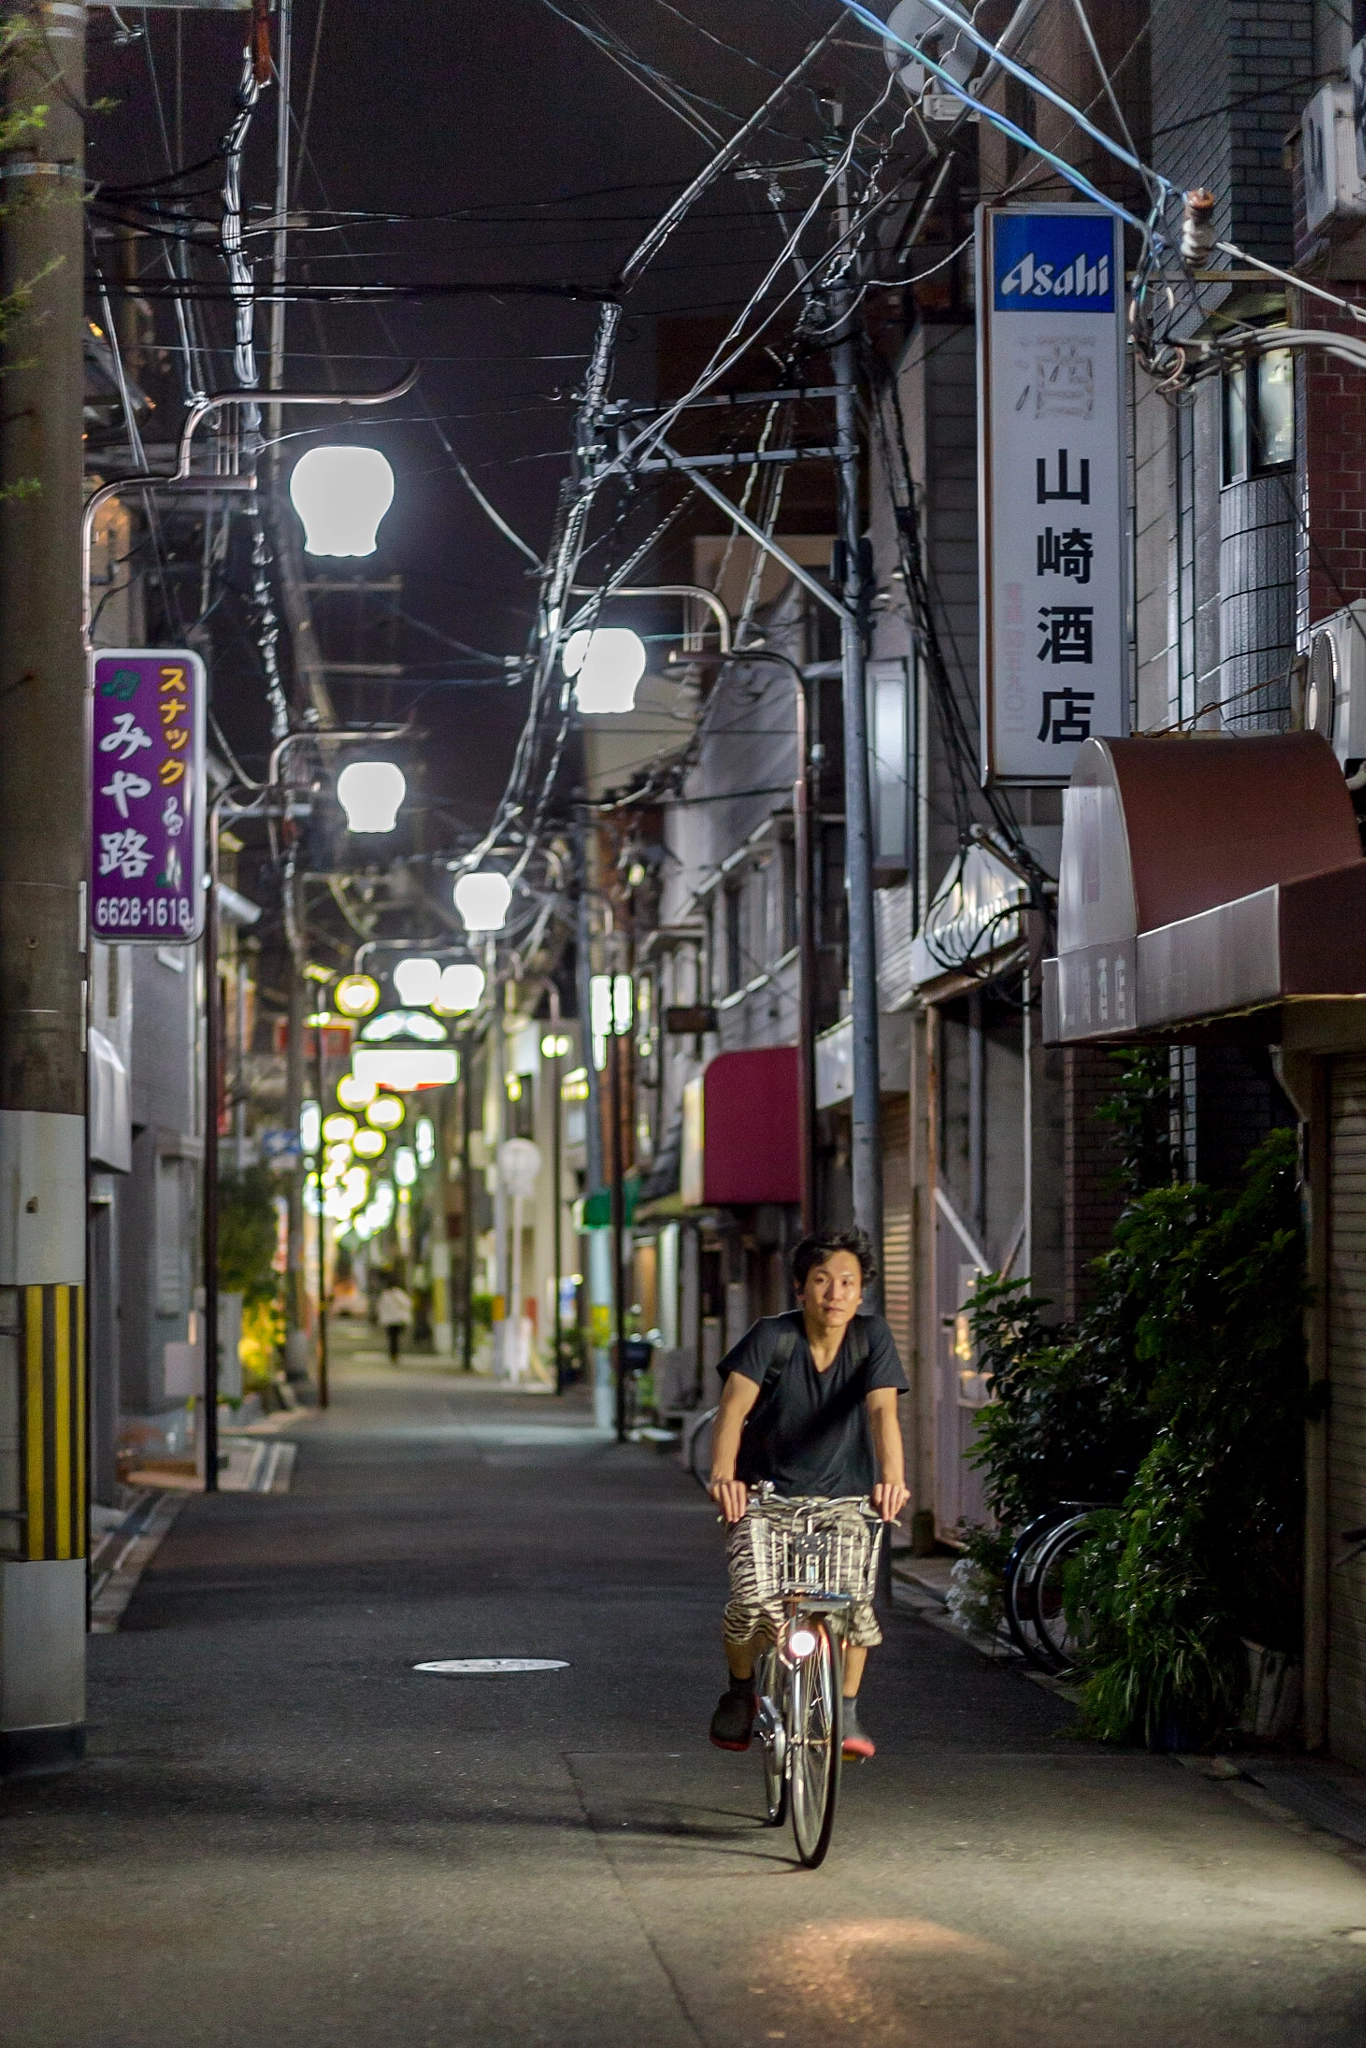 Osaka Street and bike